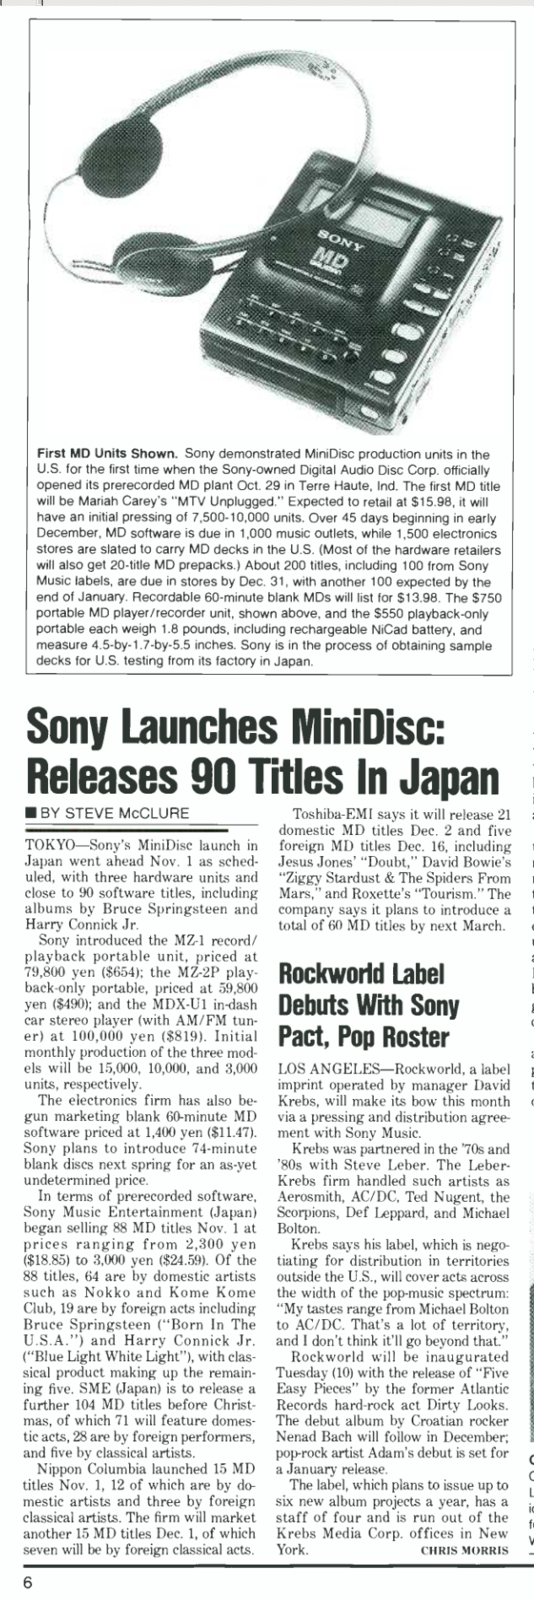 Sony Minidisc Billboard-1992-11-14 pdf.png